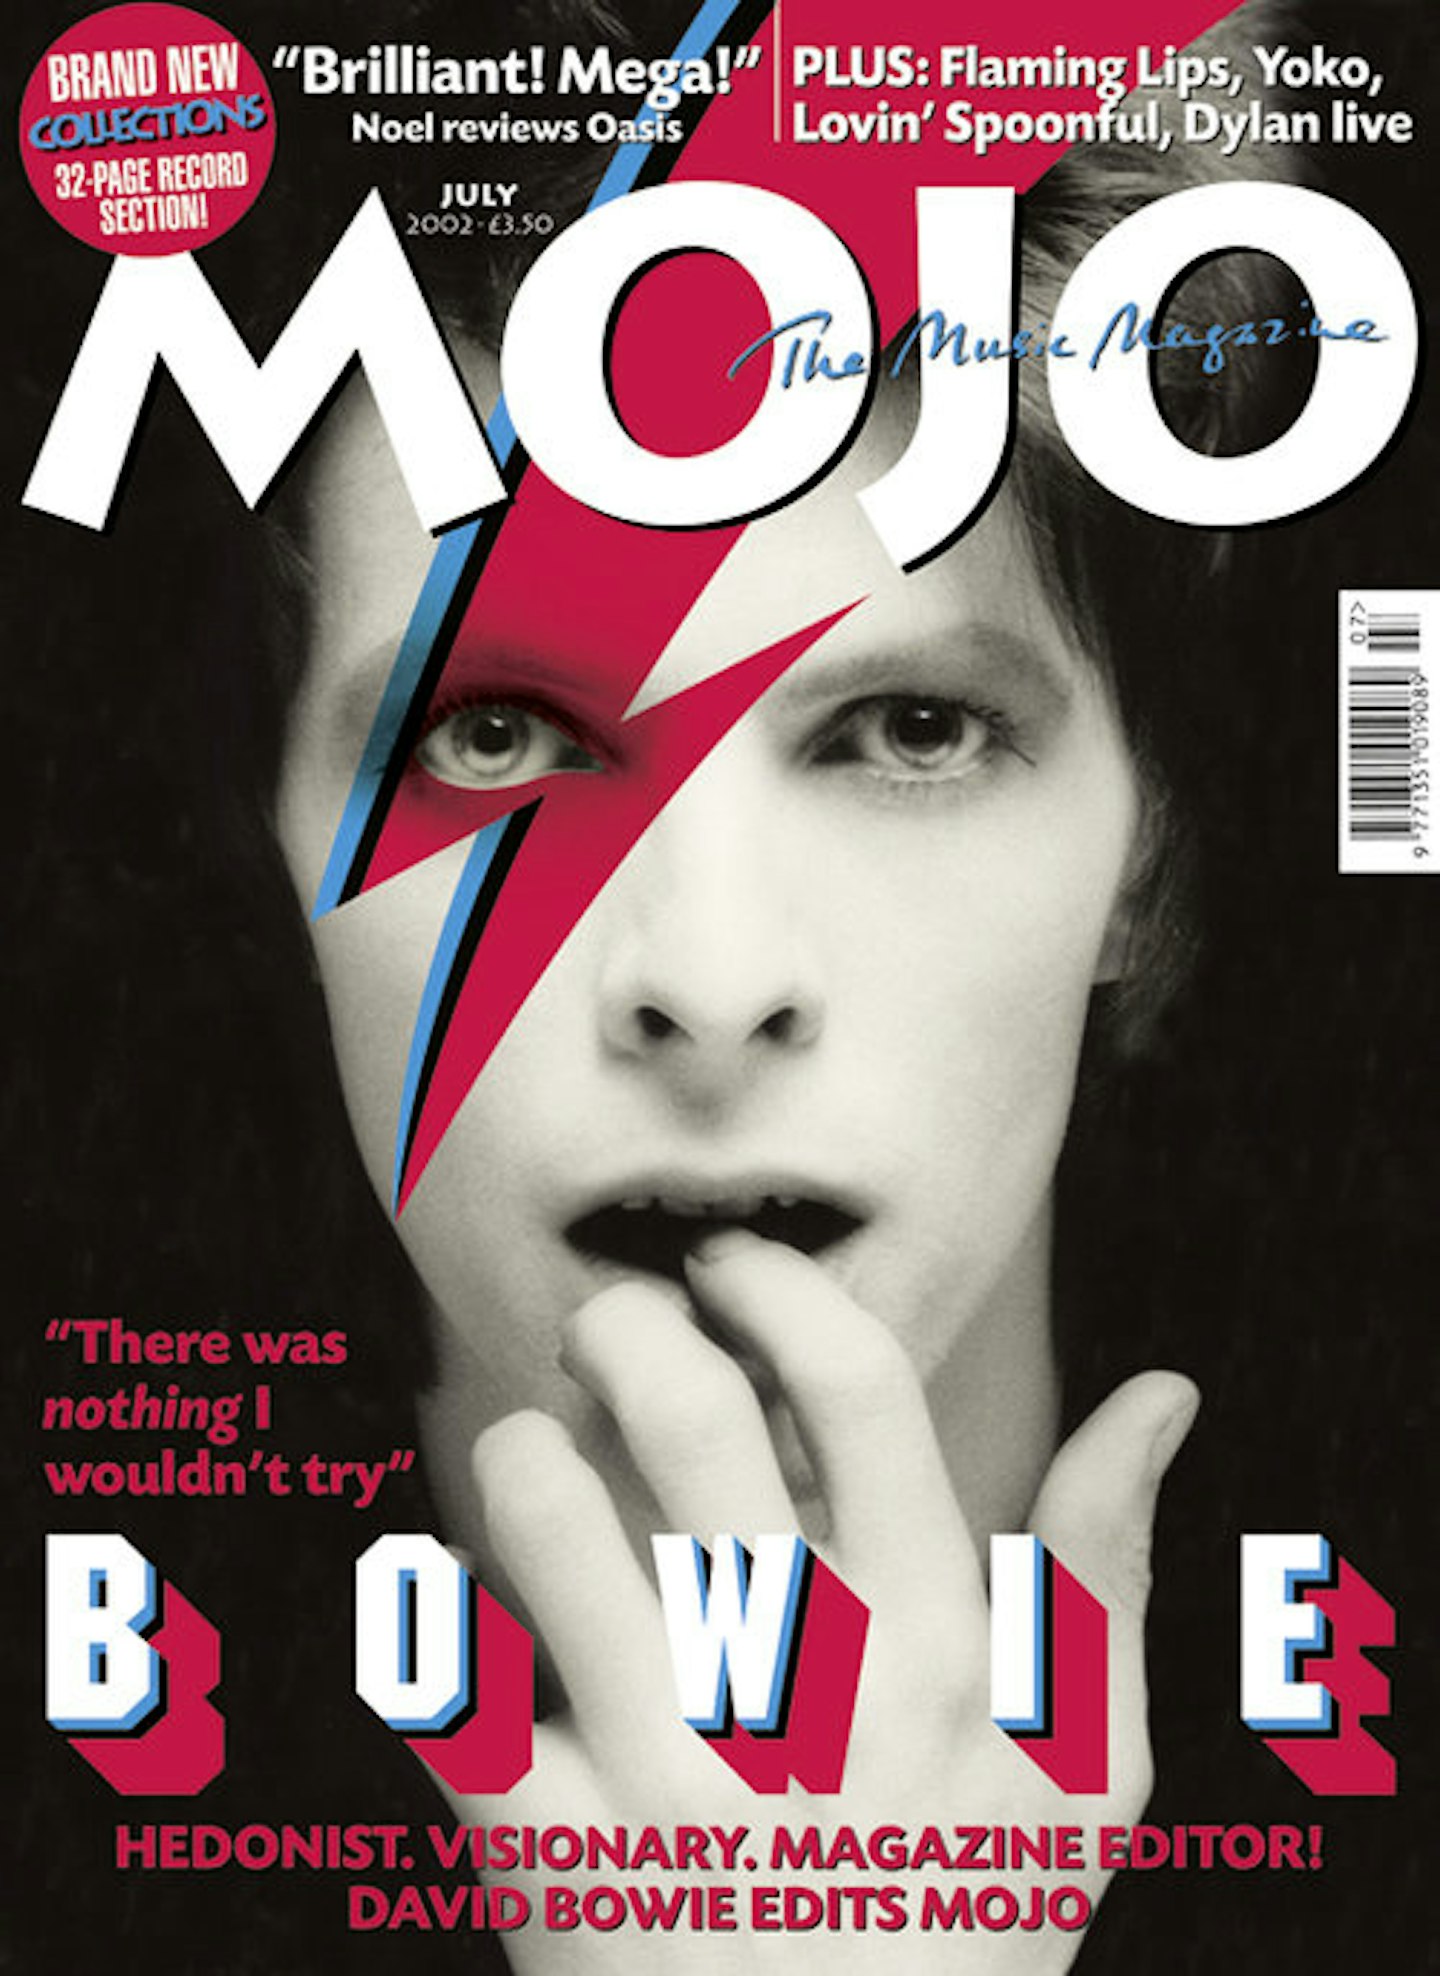 MOJO Issue 104 / July 2002